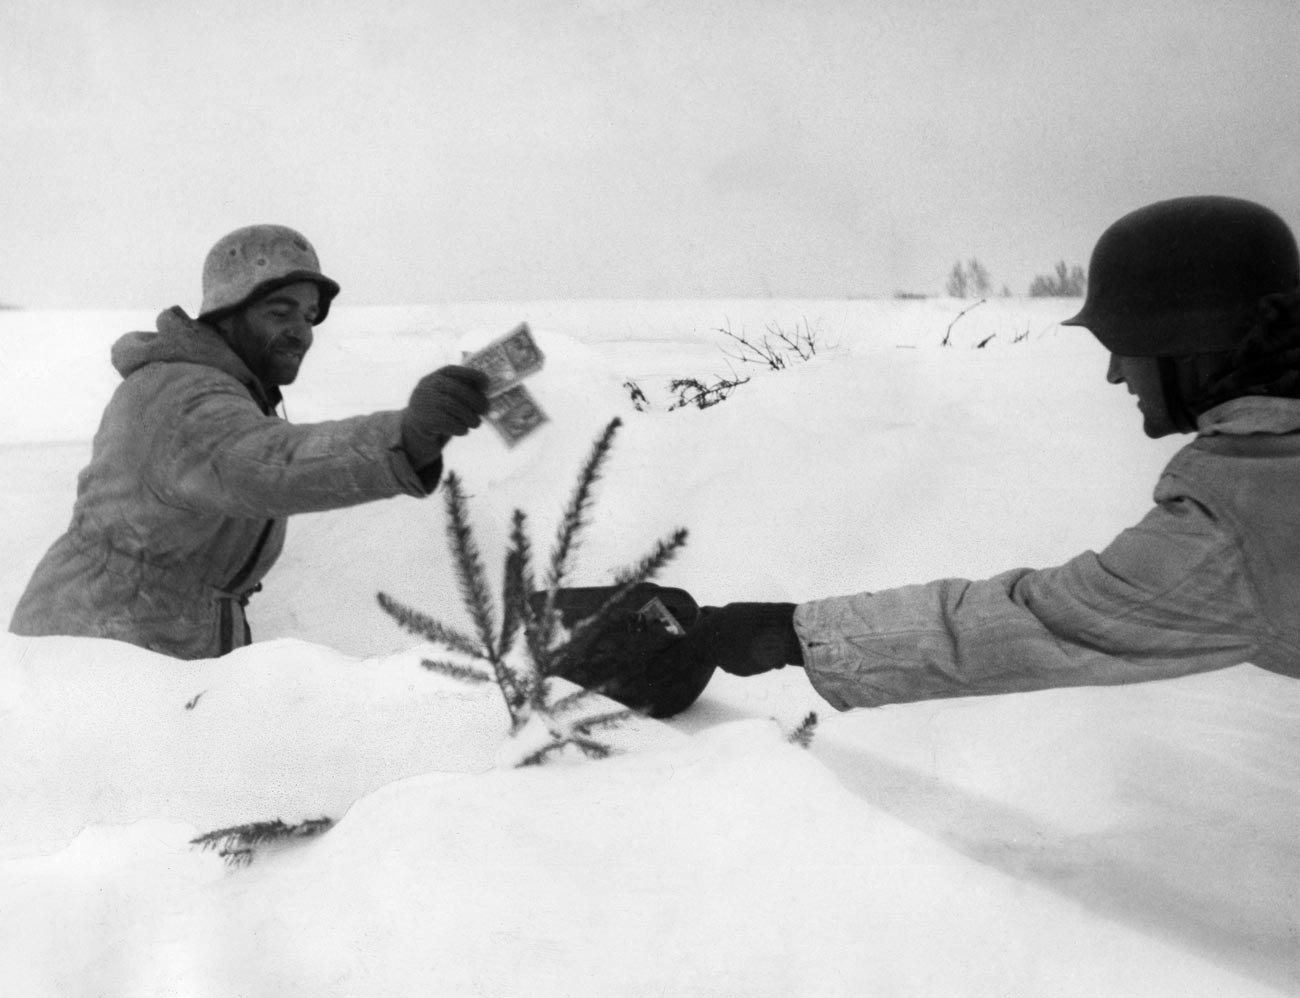 Zweiter Weltkrieg Schlacht um Kurland Zwei Mitglieder einer dänischen Einheit der Waffen-SS in Kurland, Sowjetunion, wo sie an der Schlacht um Kurland teilnahmen - Februar 1945.